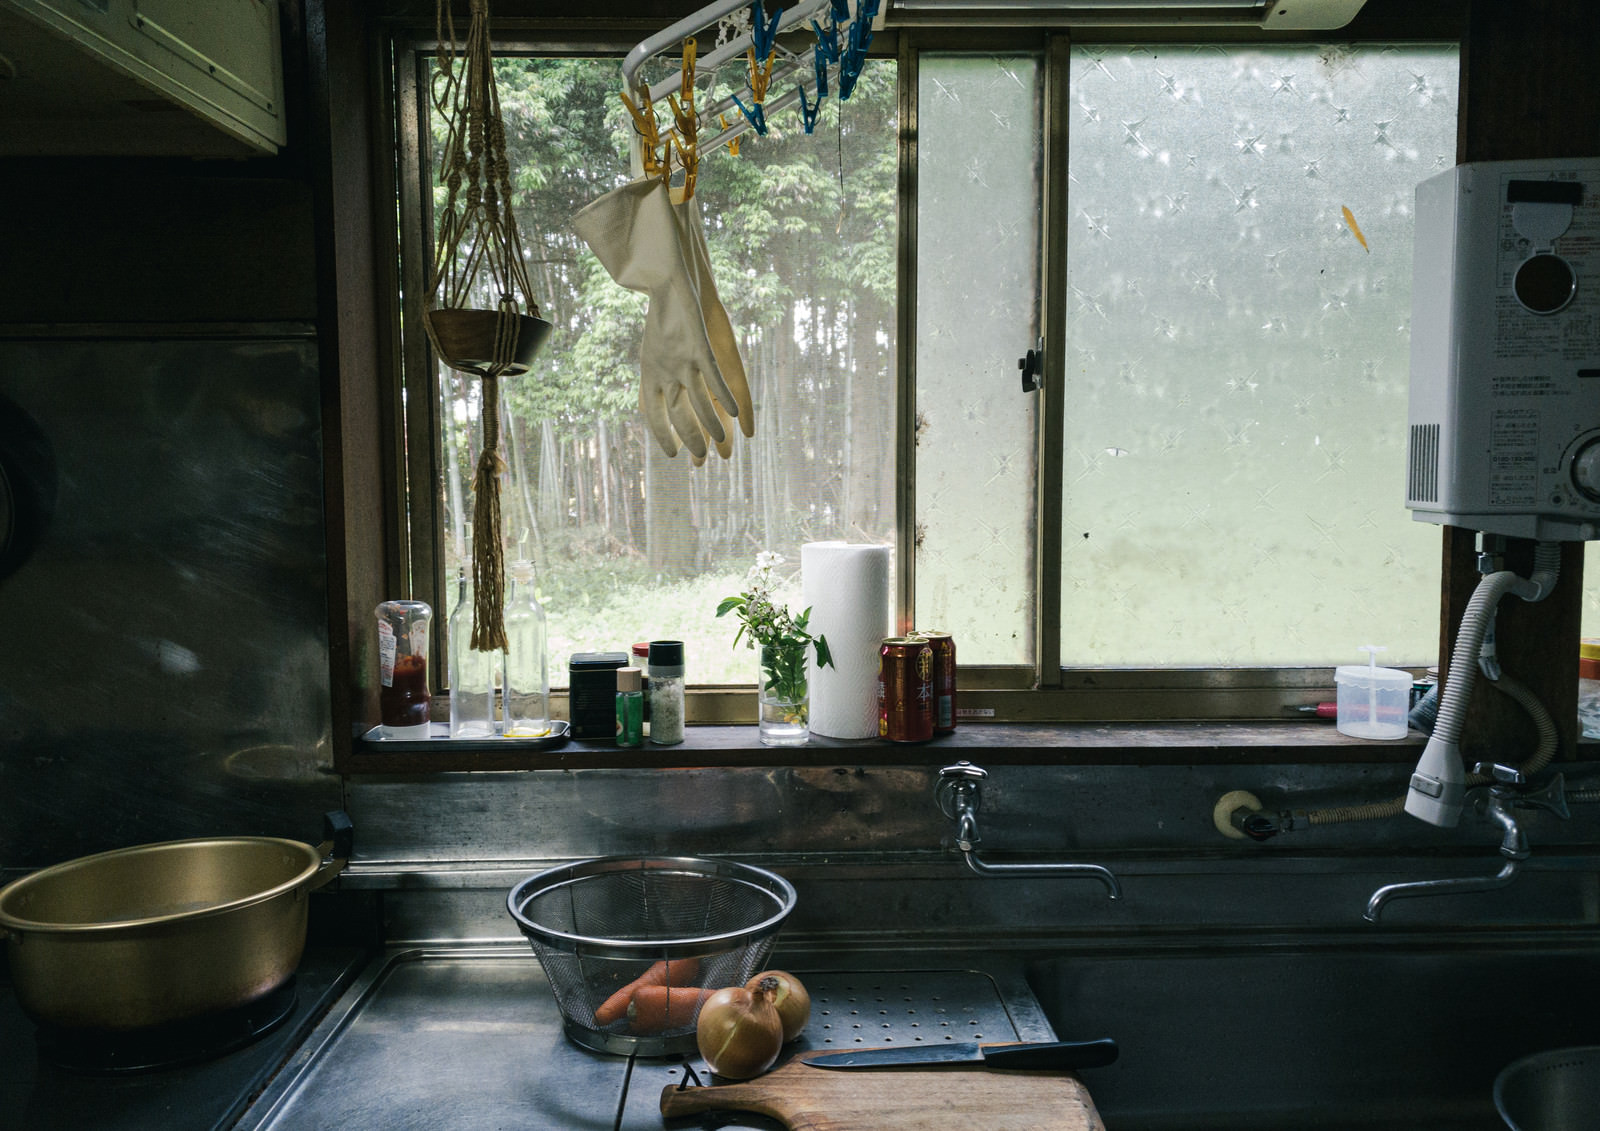 「田舎の台所で調理を開始する様子」の写真